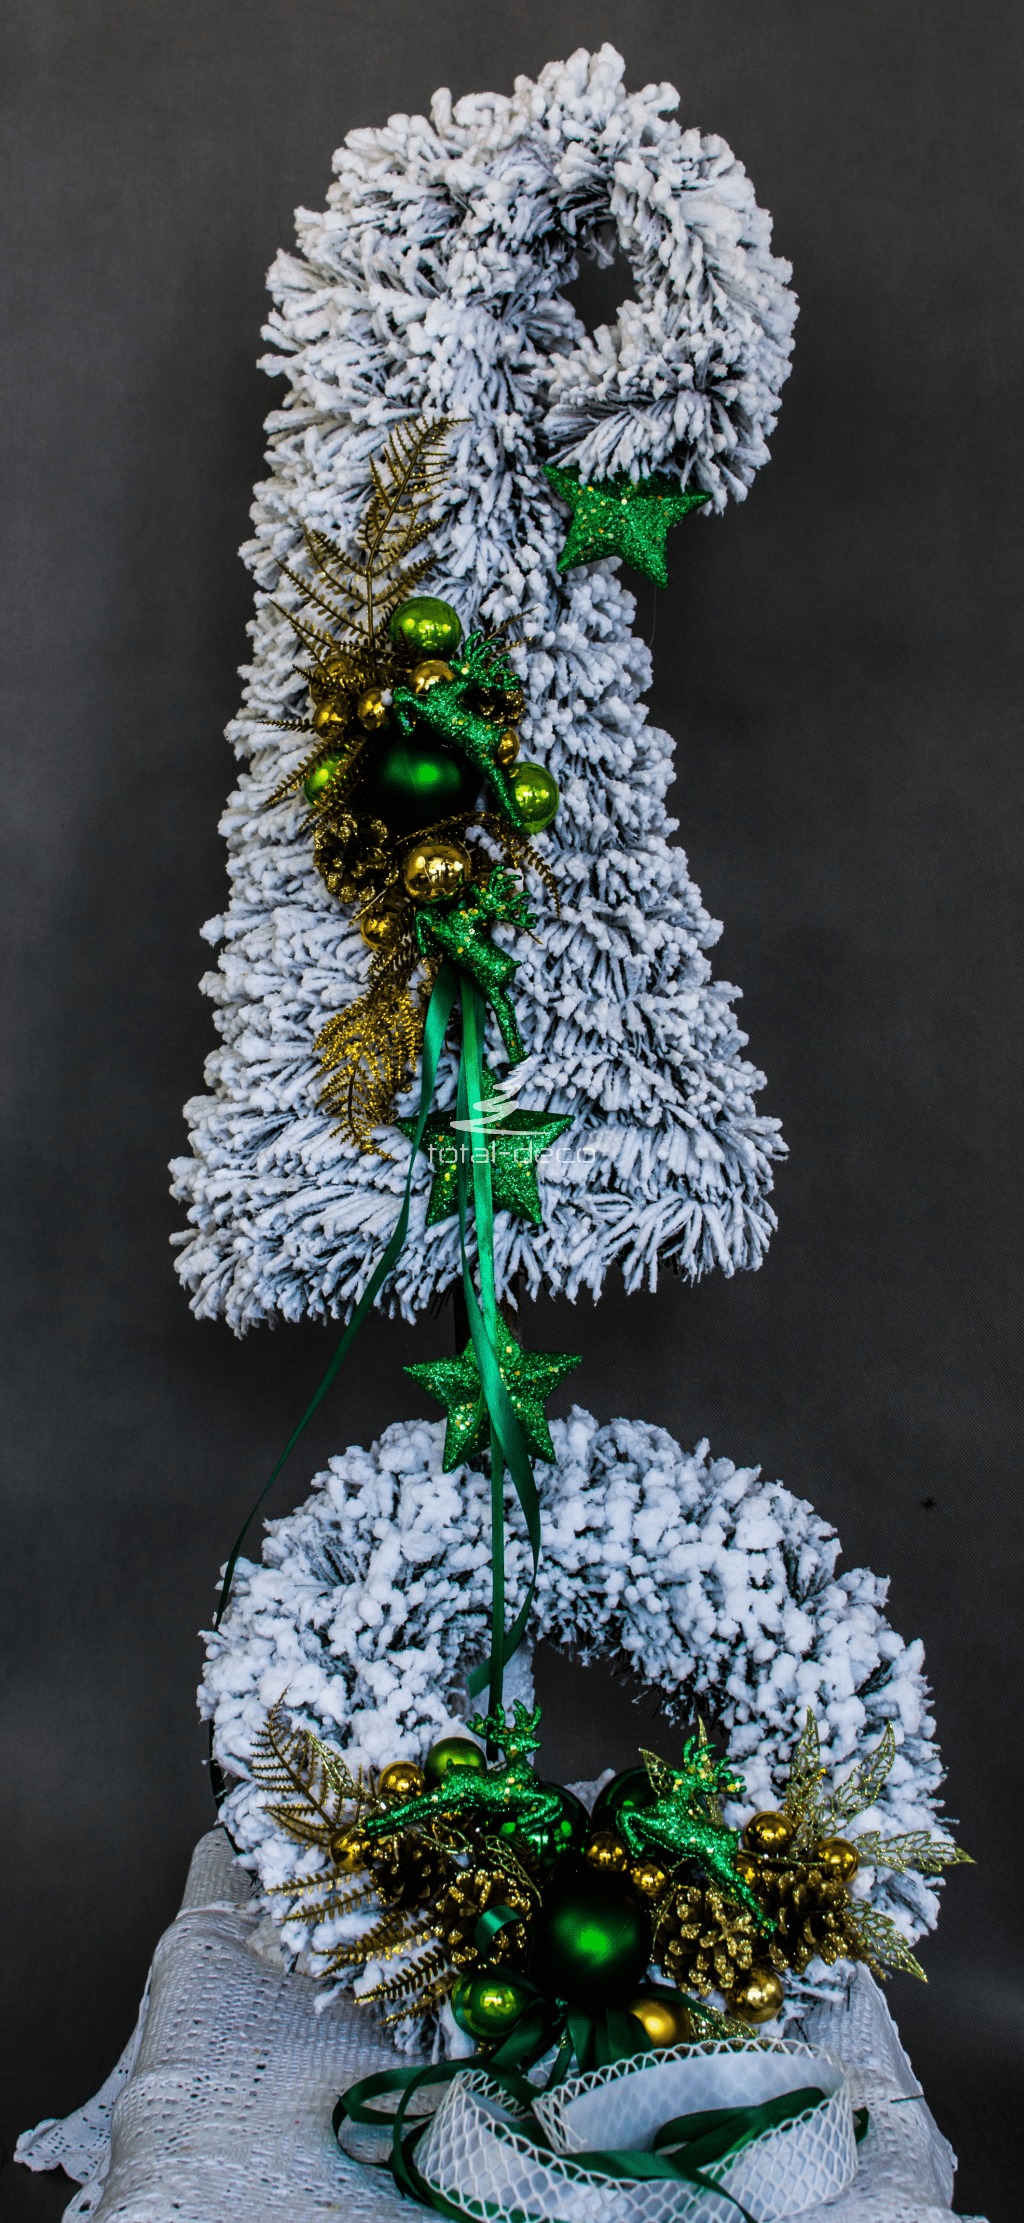 nowoczesny zestaw ośnieżonych dekoracji bożnarodzeniowych nowoczesne ozdoby świąteczne biała choinka na pniu zielone dodatki butelkowa zieleń wianek stroik oprószony śniegiem obielona